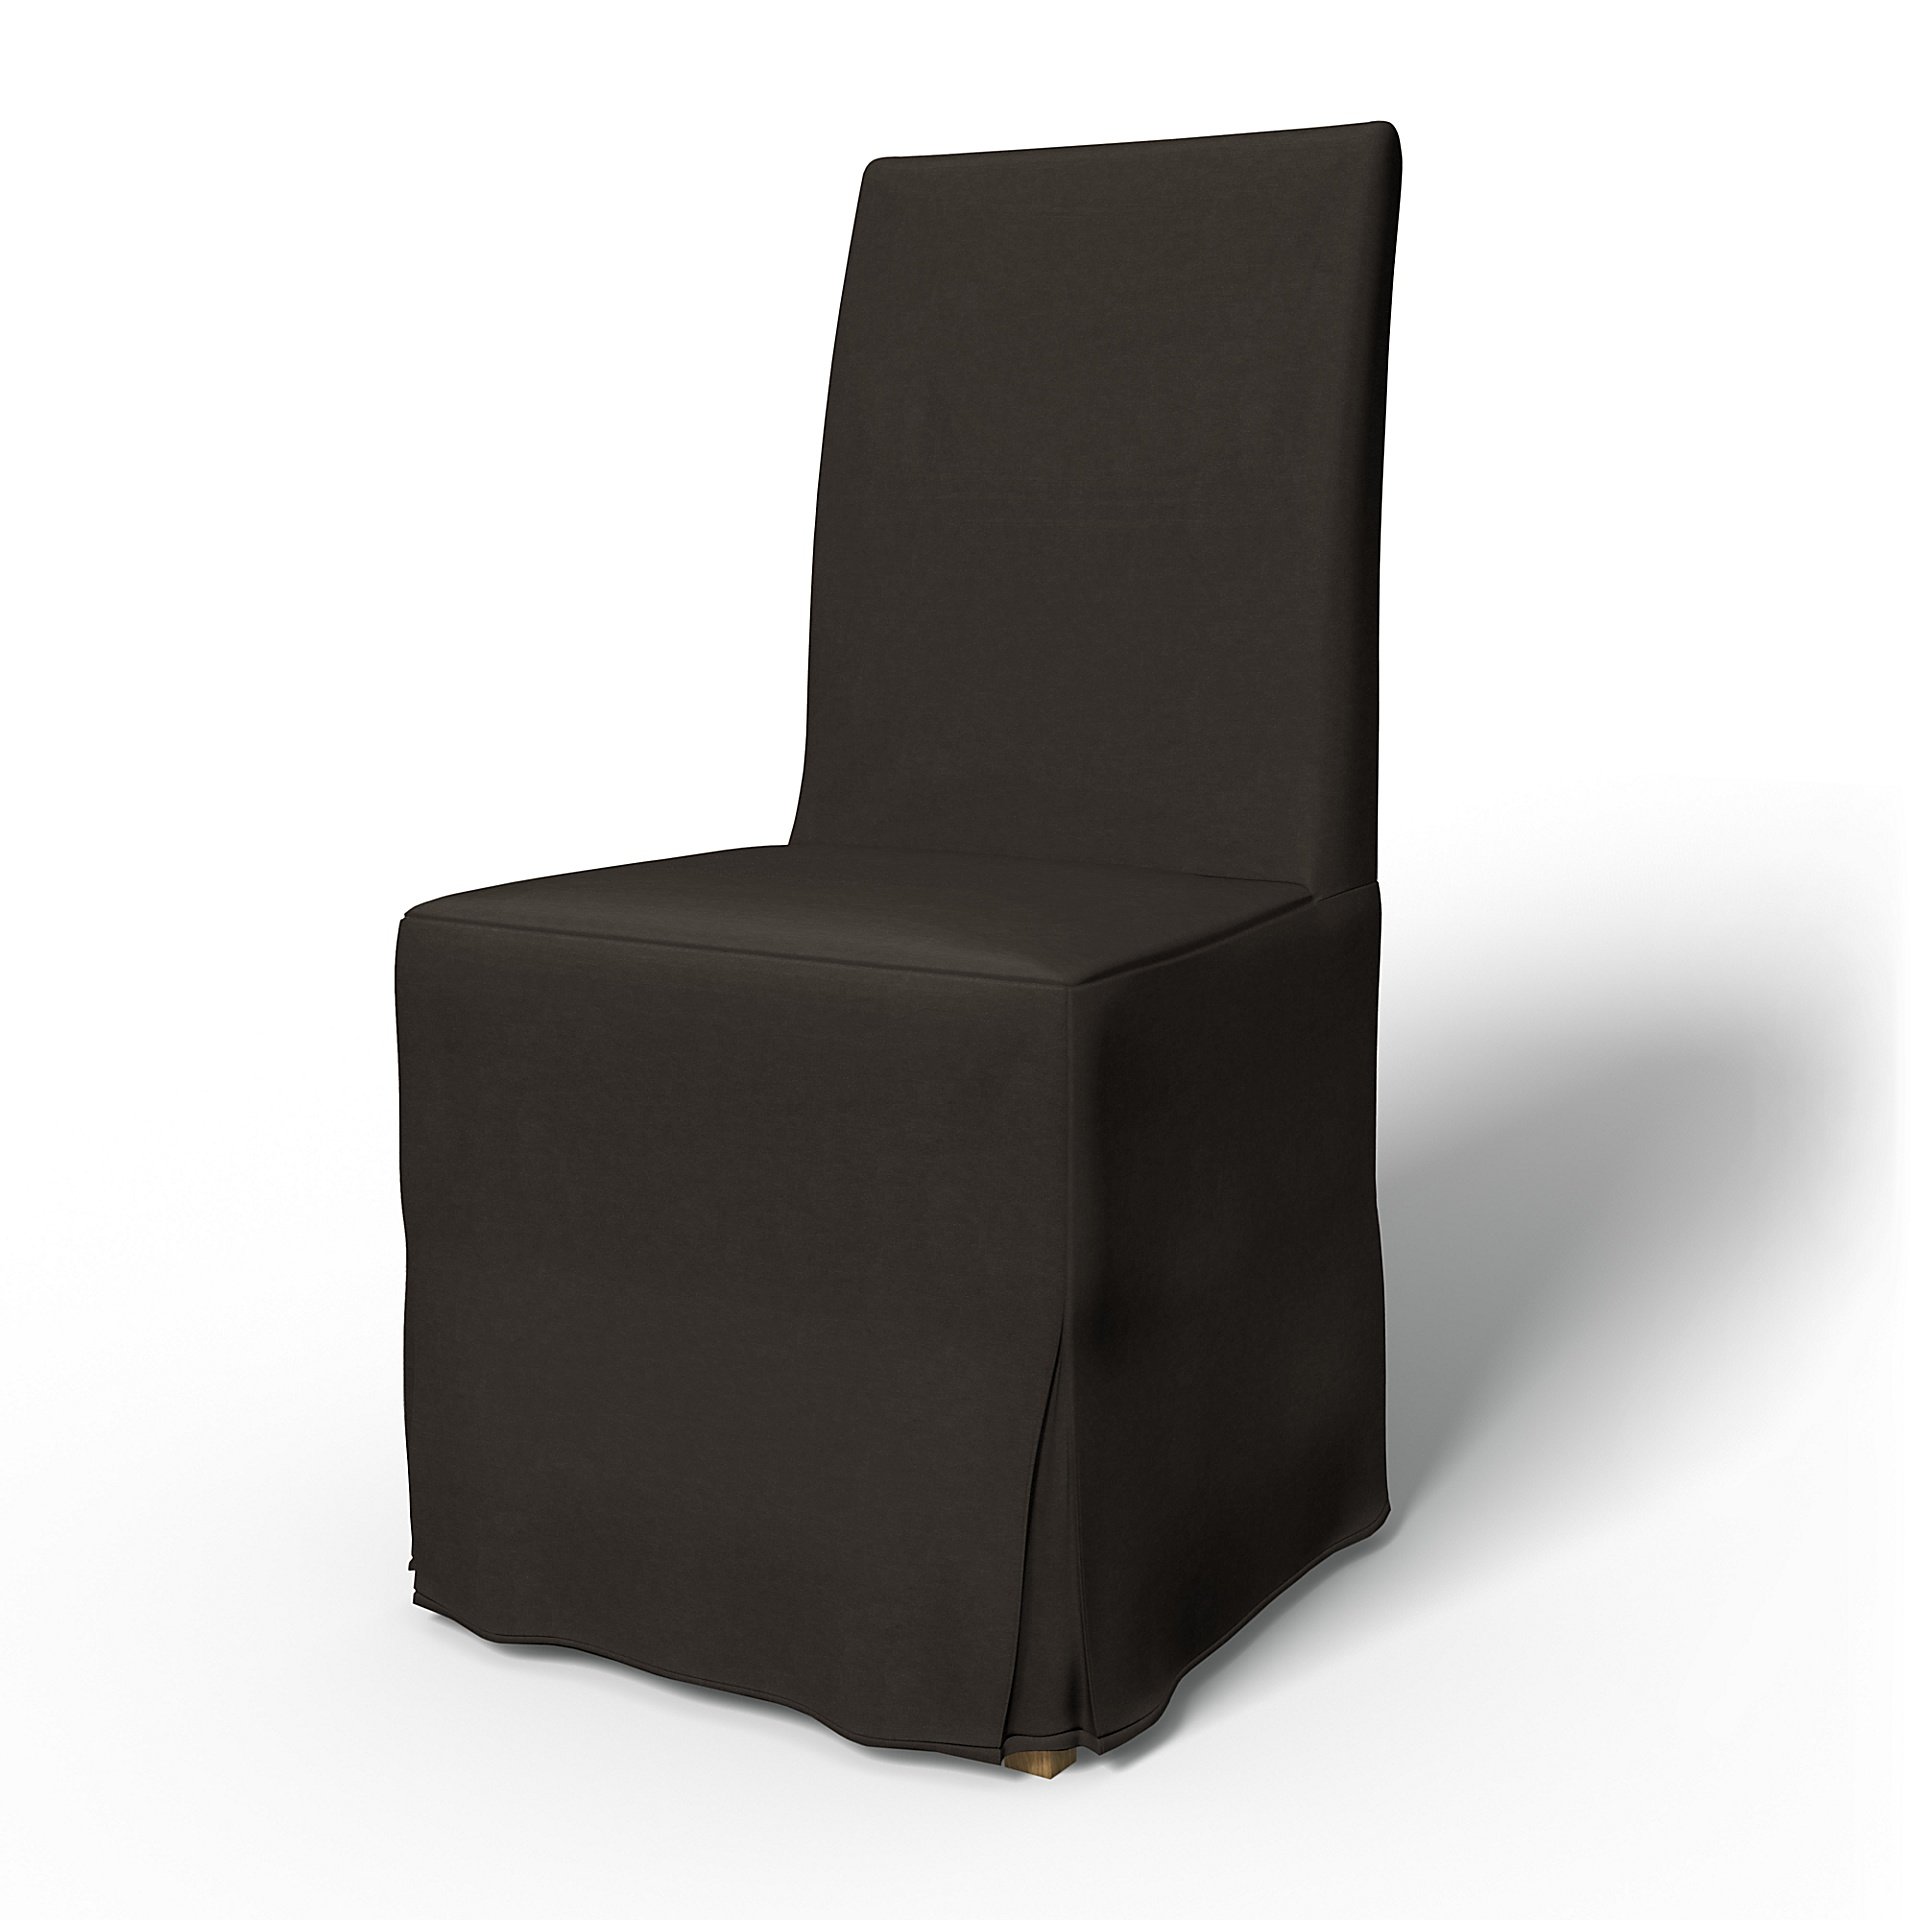 IKEA - Henriksdal Dining Chair Cover Long Skirt with Box Pleat (Standard model), Licorice, Velvet - 